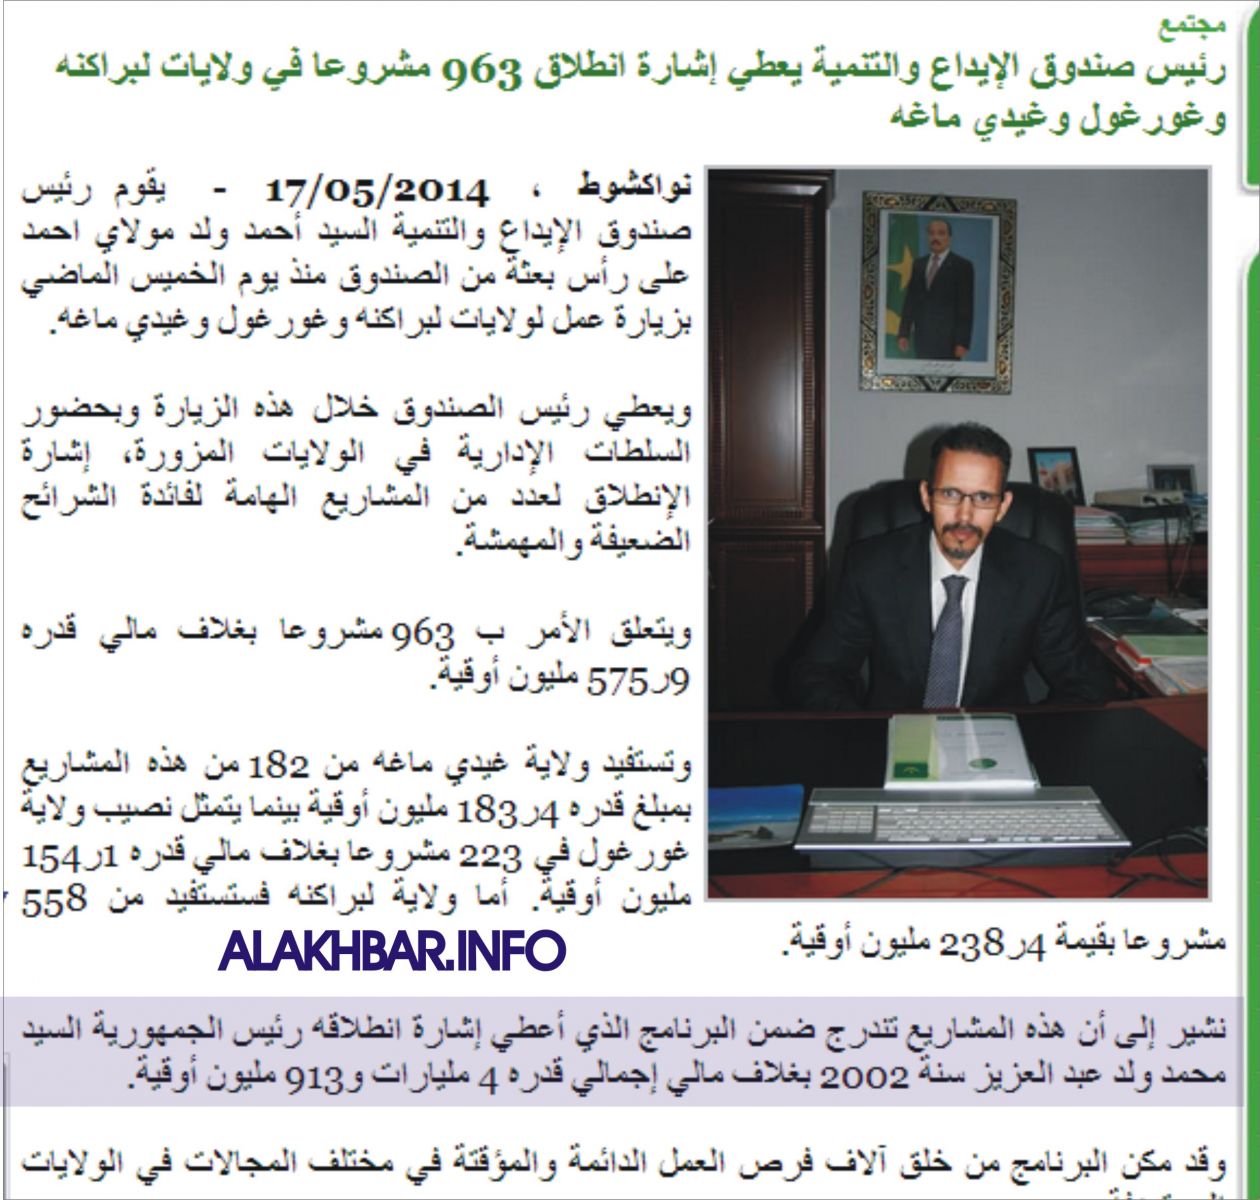 الوكالة الرسمية اعتبرت ولد عبد العزيز رئسا للجمهورية سنة 2002م (الأخبار)